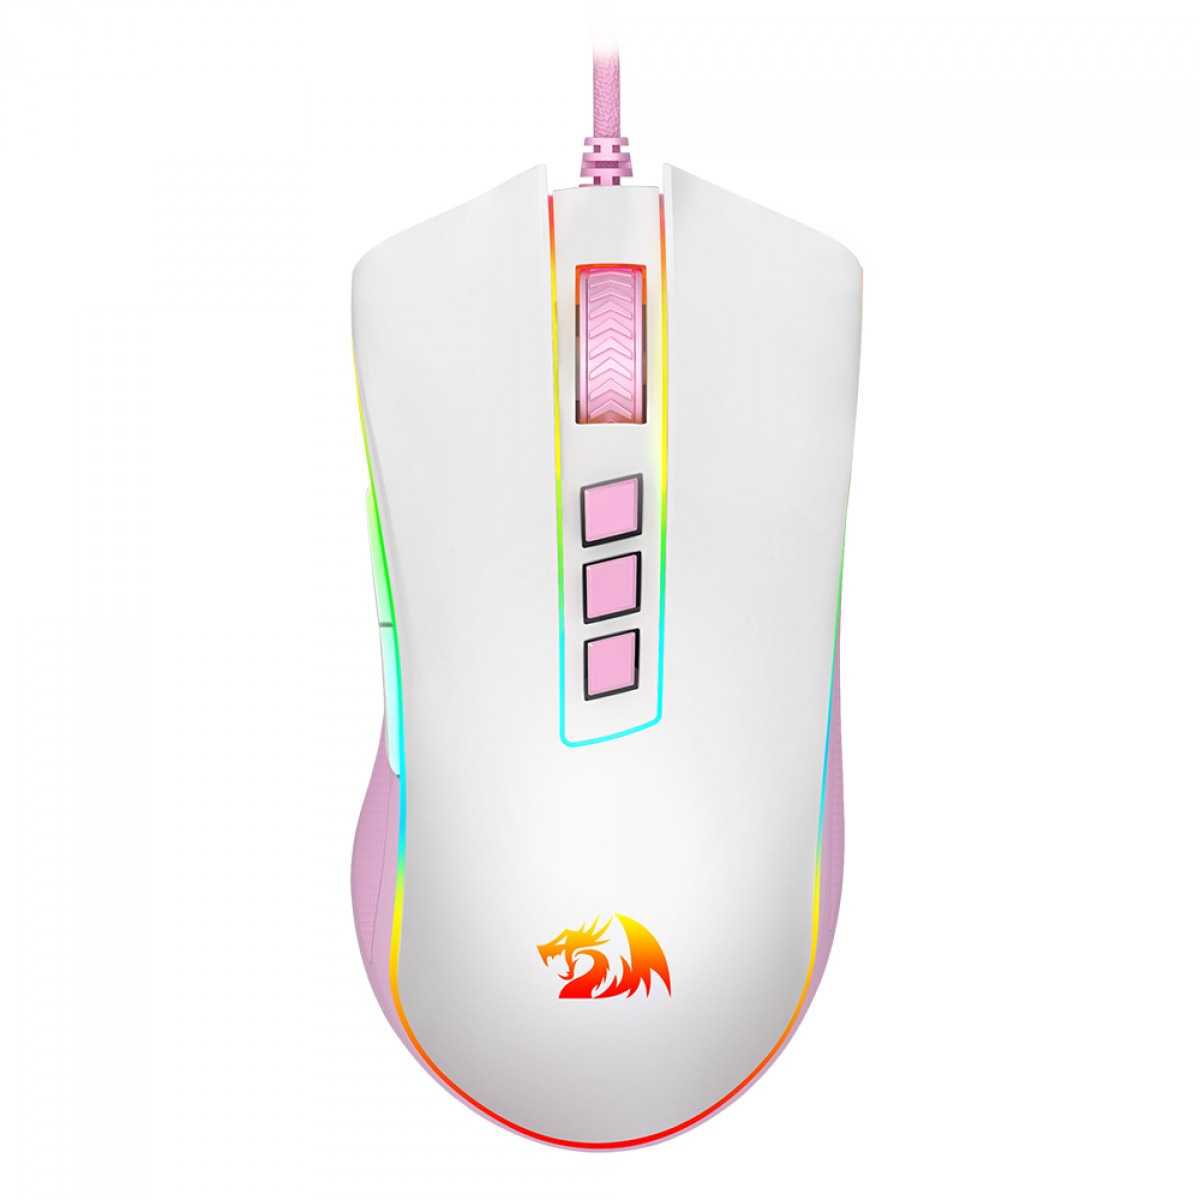 Mouse Gamer Redragon Cobra RGB 12400 DPI 8 Botões Programáveis Branco -  2Plays - Melhores ofertas você encontra aqui!